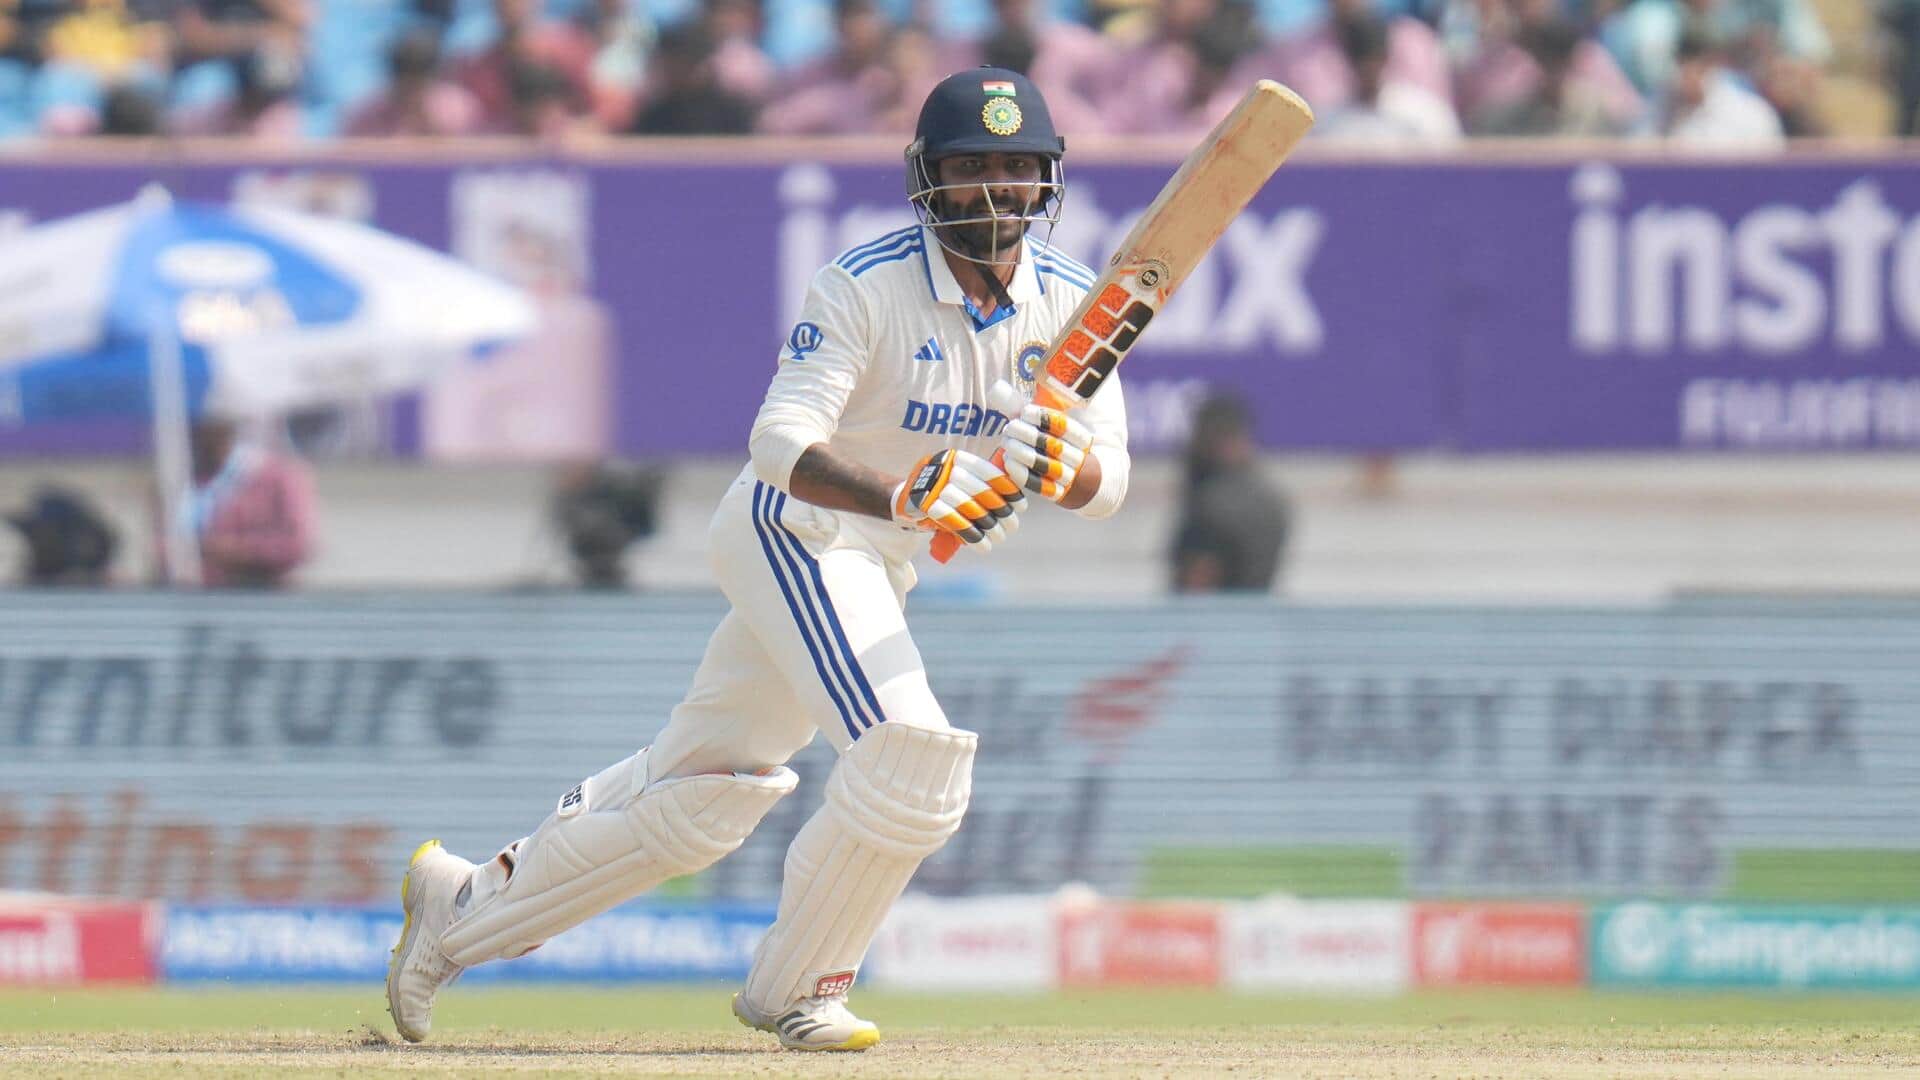 Ravindra Jadeja completes 3,000 Test runs with century against England